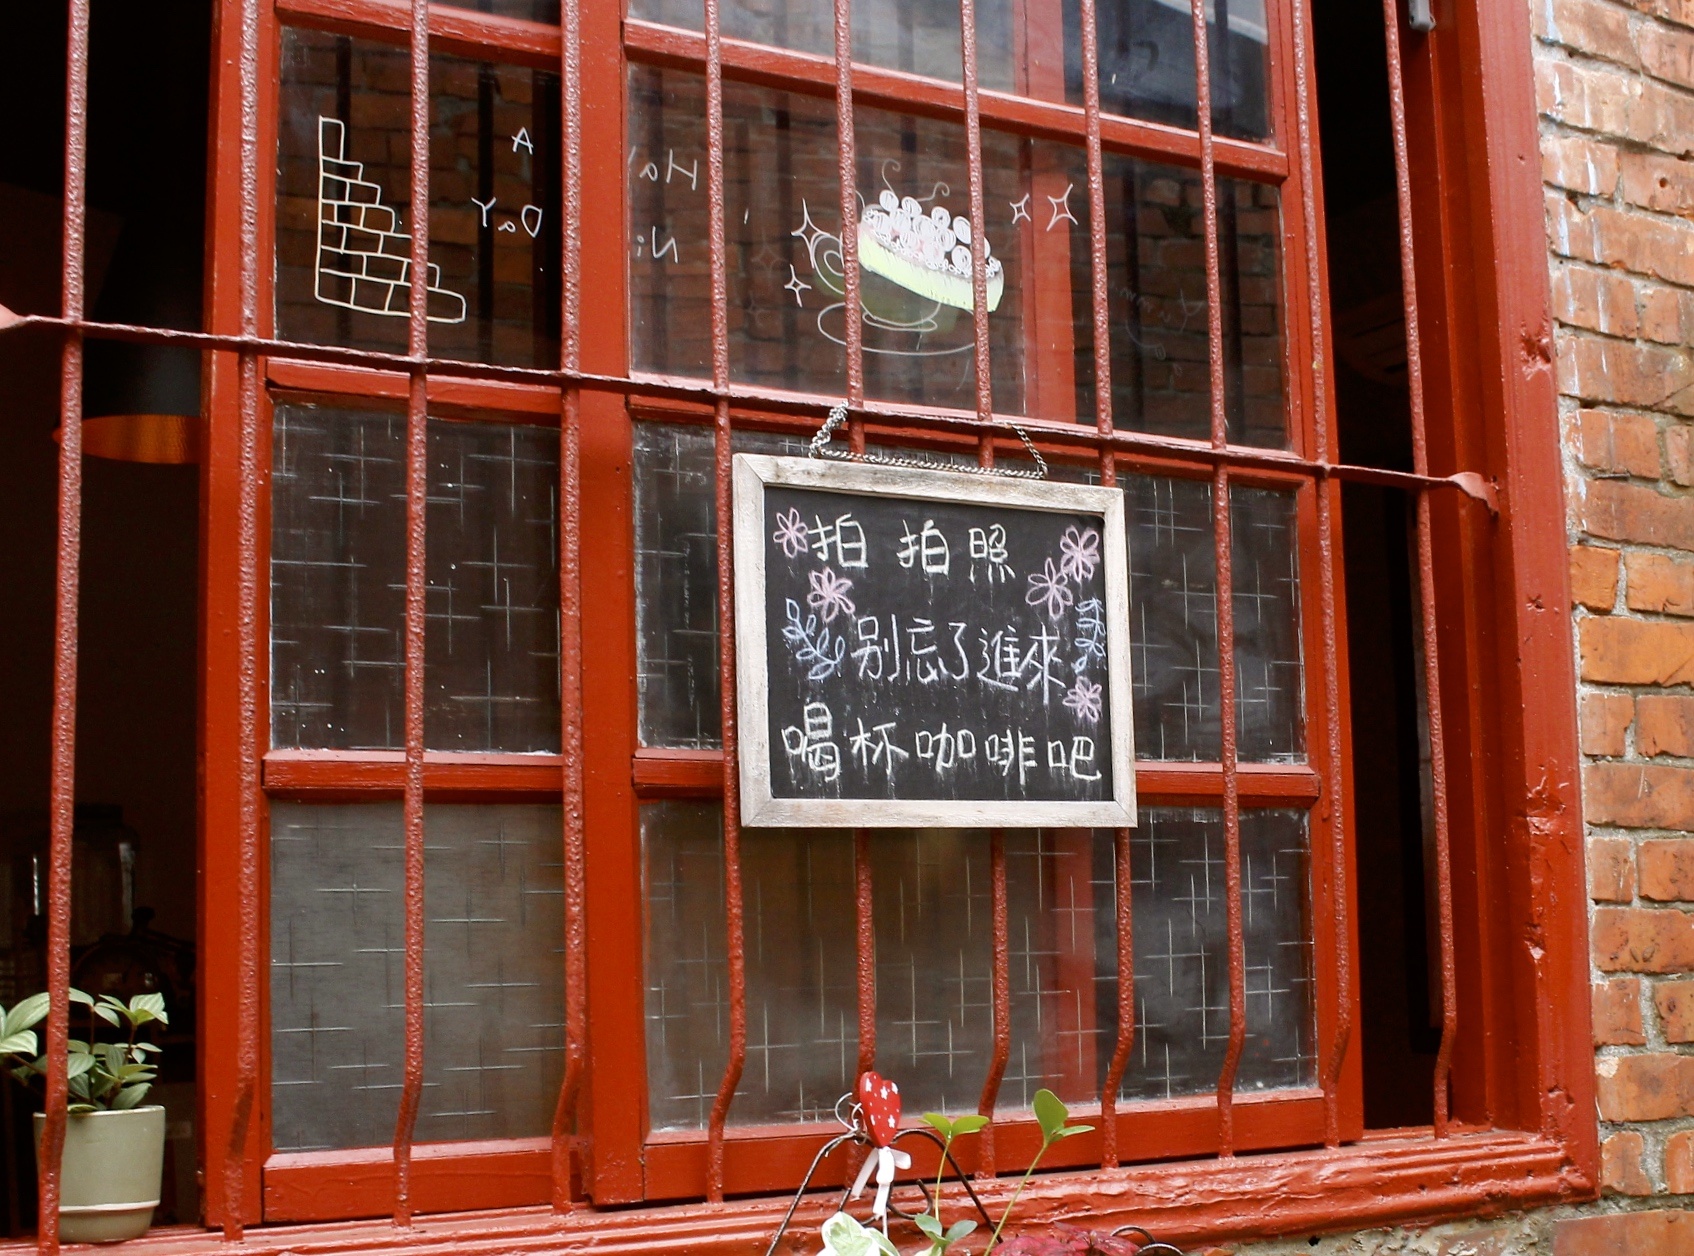 【桃園 晴天咖啡sunny cafe】彎曲巷弄裡的紅磚老宅。超萌彩繪牆「有你在便是晴天」